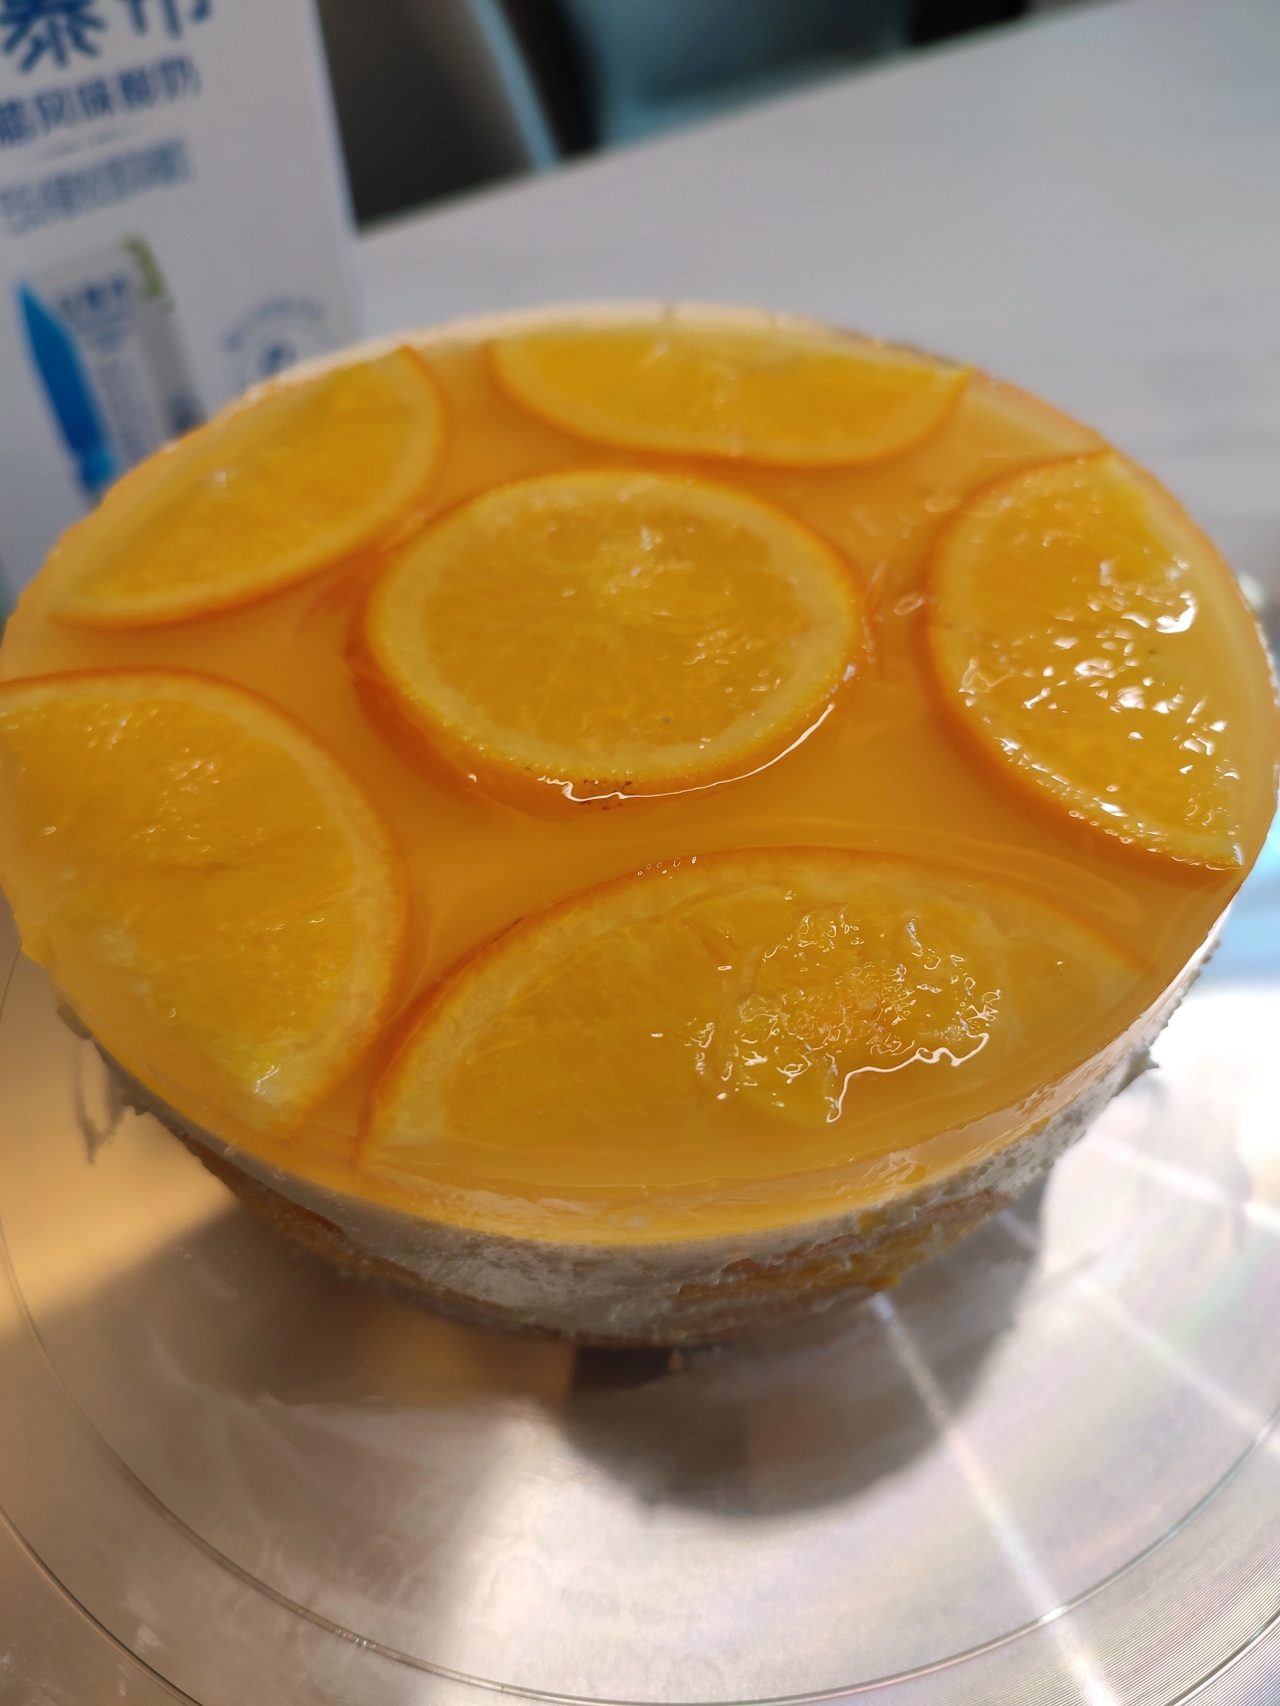 鲜橙慕斯蛋糕(六寸鲜橙镜面慕斯)